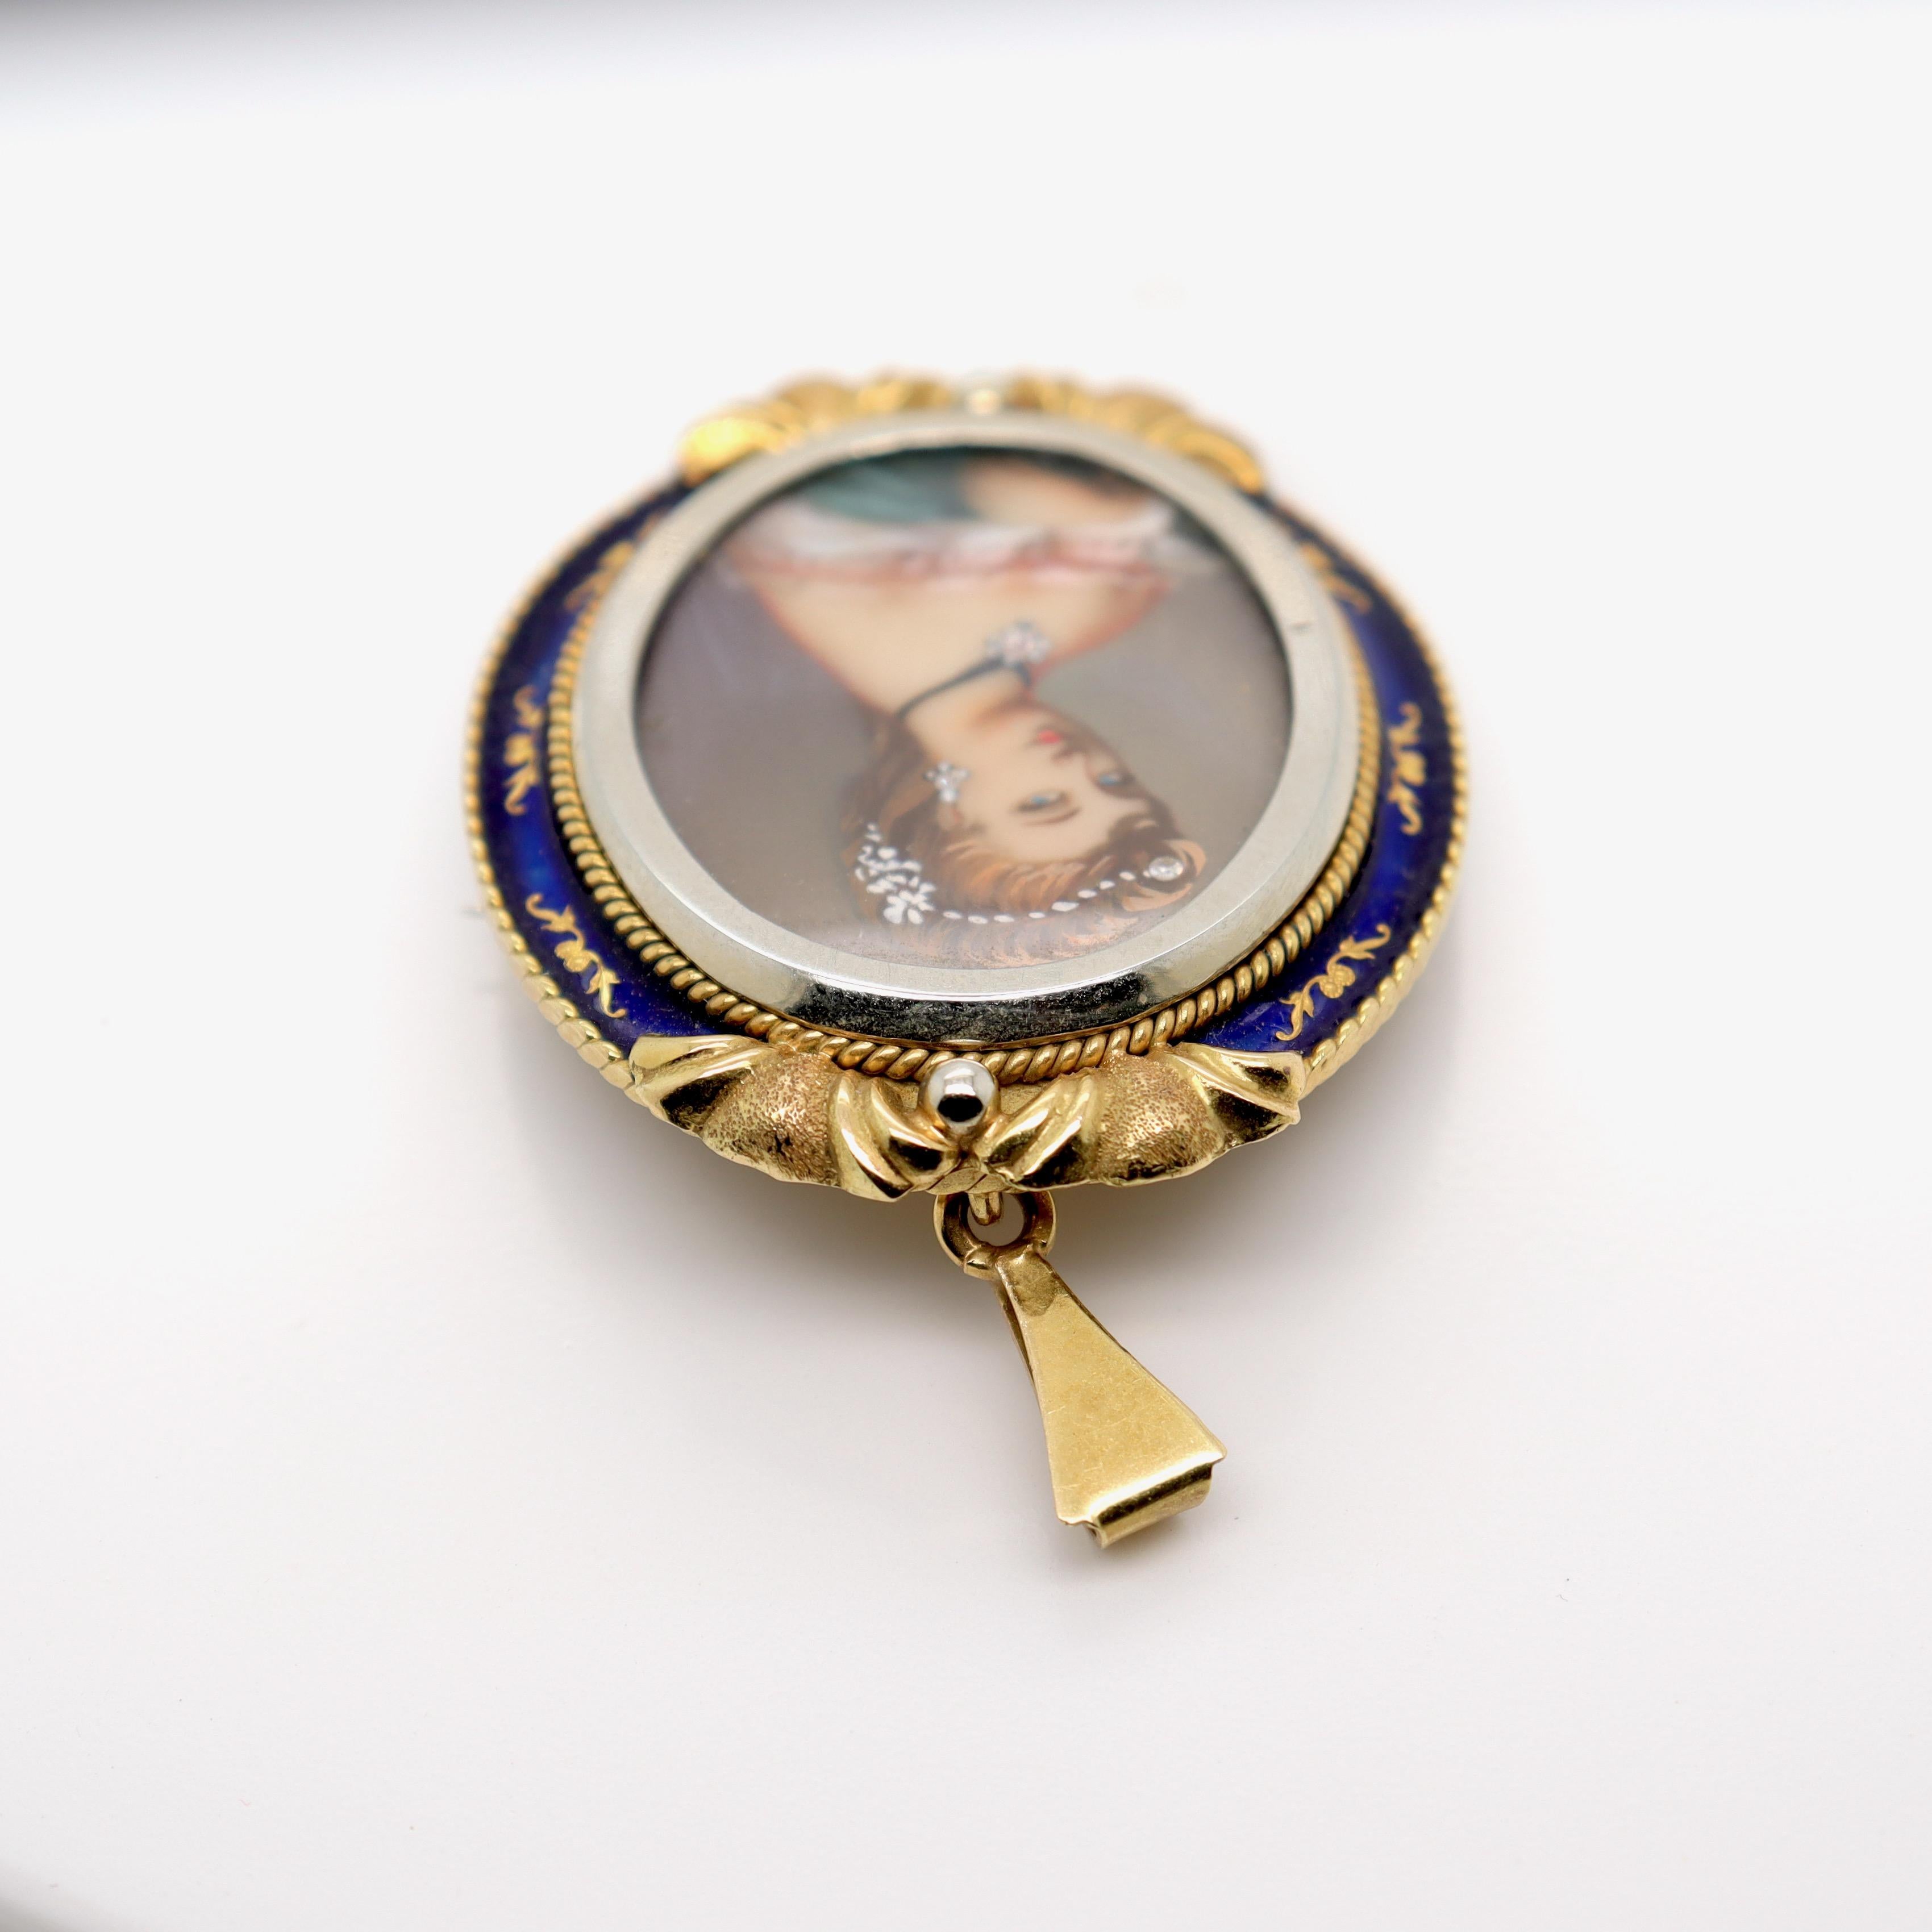 Vintage Corletto 18K Gold & Blue Enamel Portrait Miniature Brooch or Pendant For Sale 3